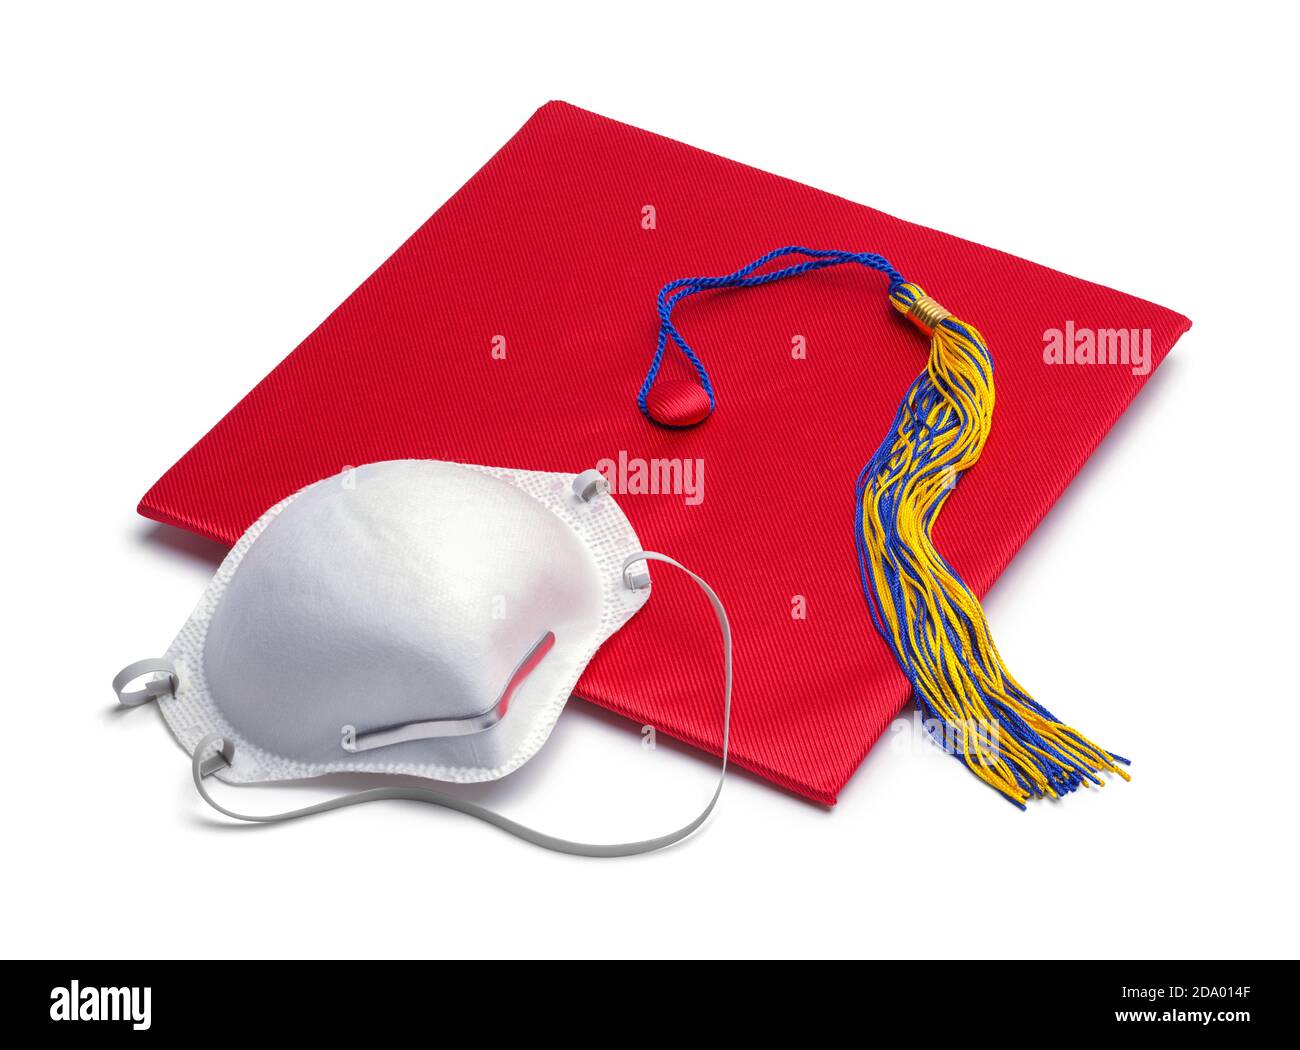 Red Mortar Board Graduation Hat con máscara N95. Foto de stock